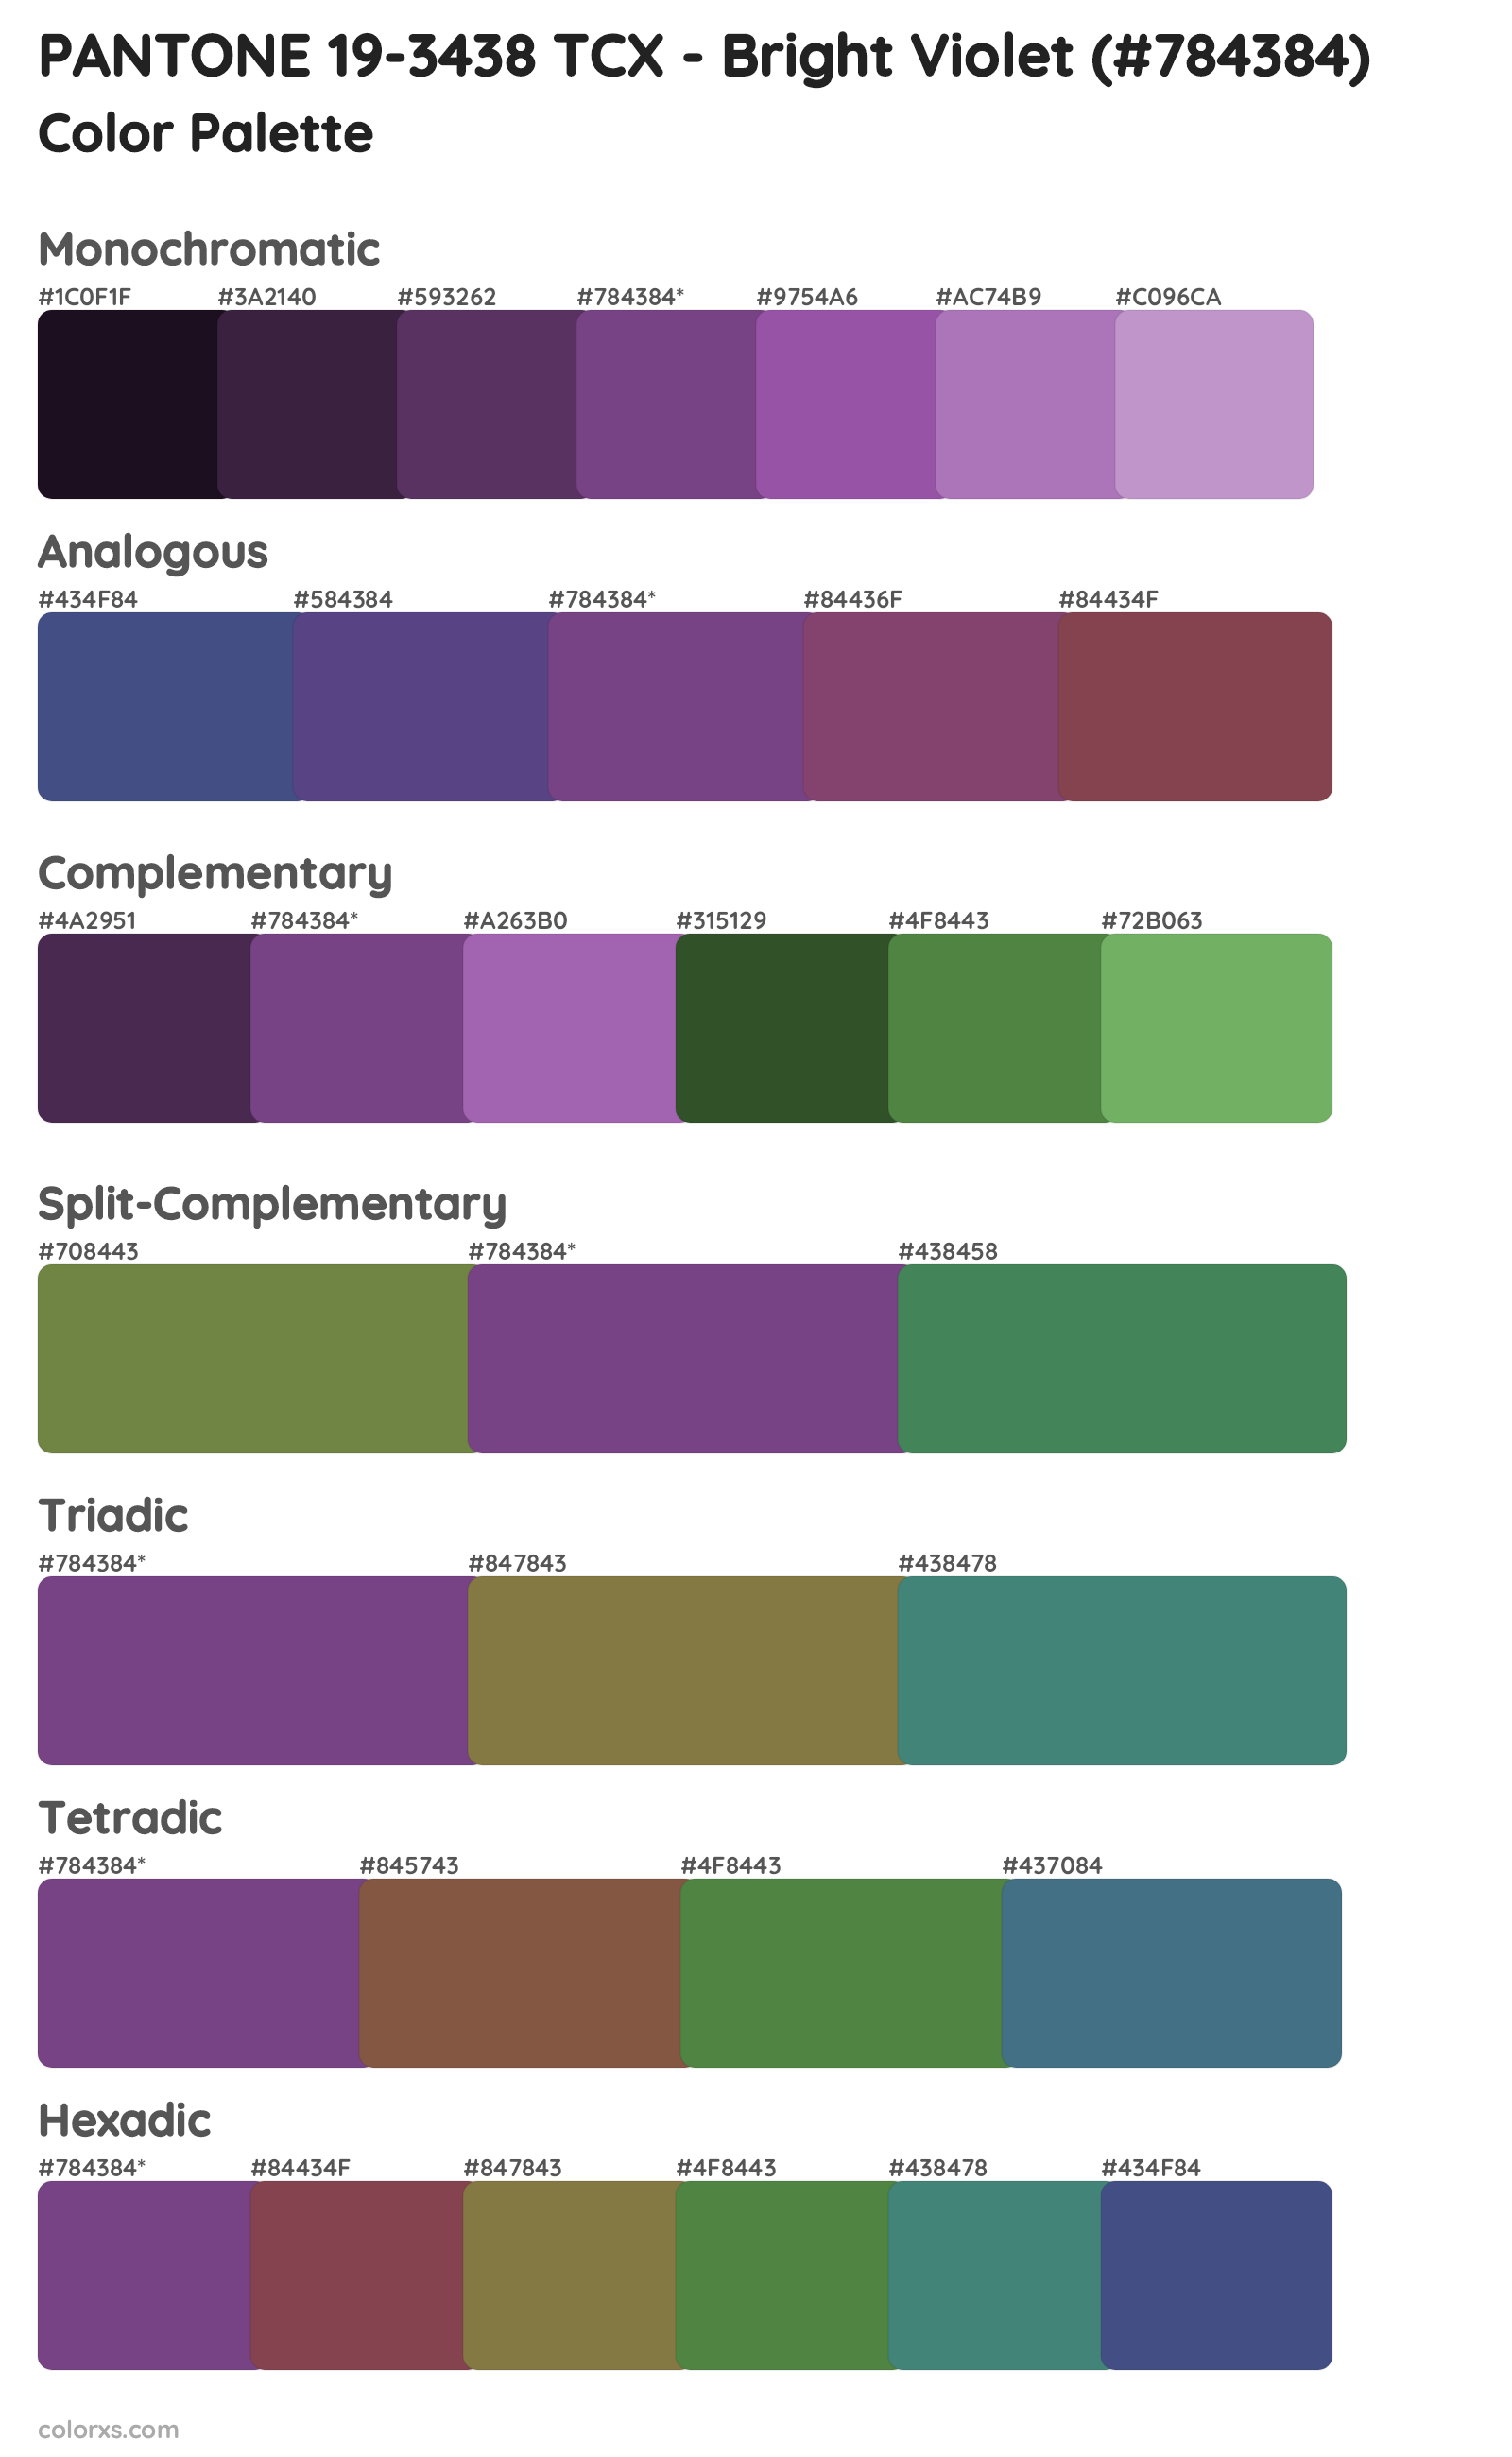 PANTONE 19-3438 TCX - Bright Violet Color Scheme Palettes